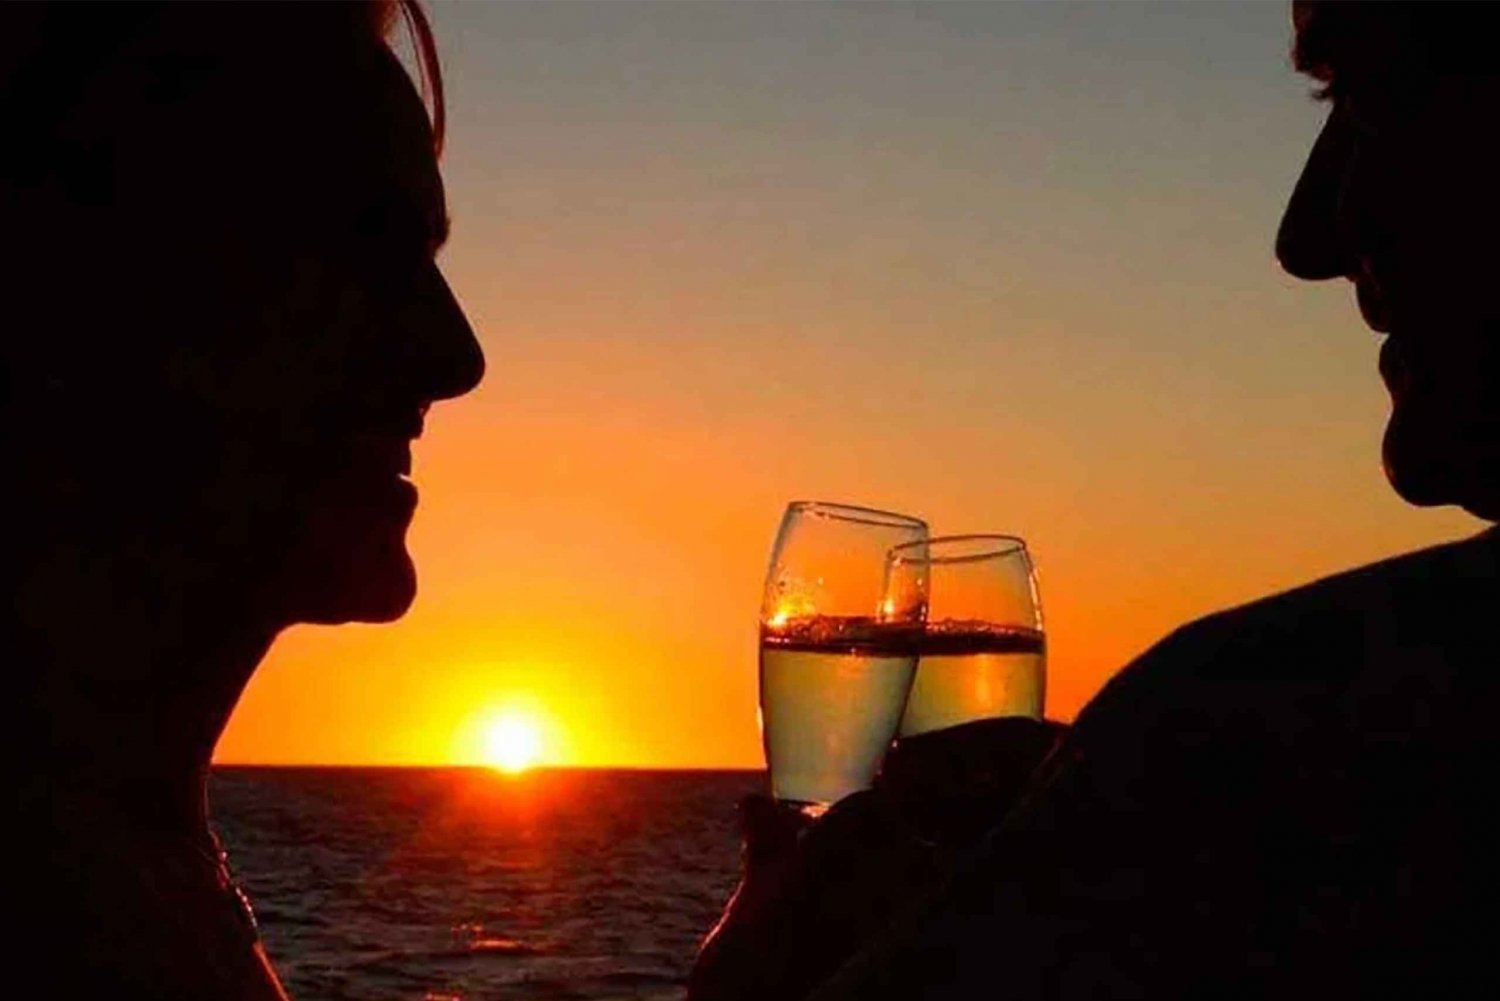 Ibiza: Auringonlaskun luola Snorkkeliristeily